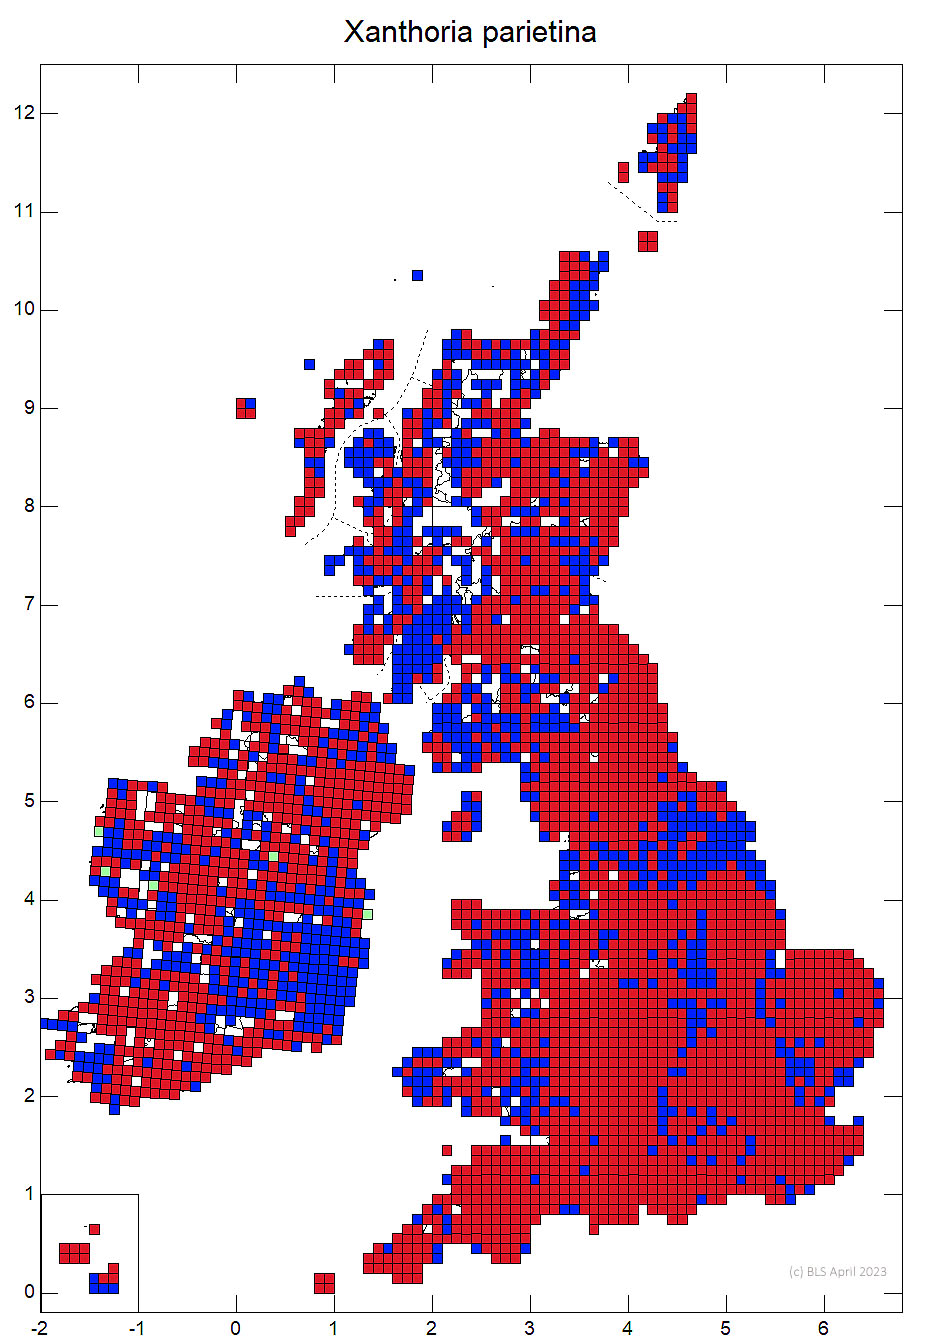 Xanthoria parietina 10km sq distribution map